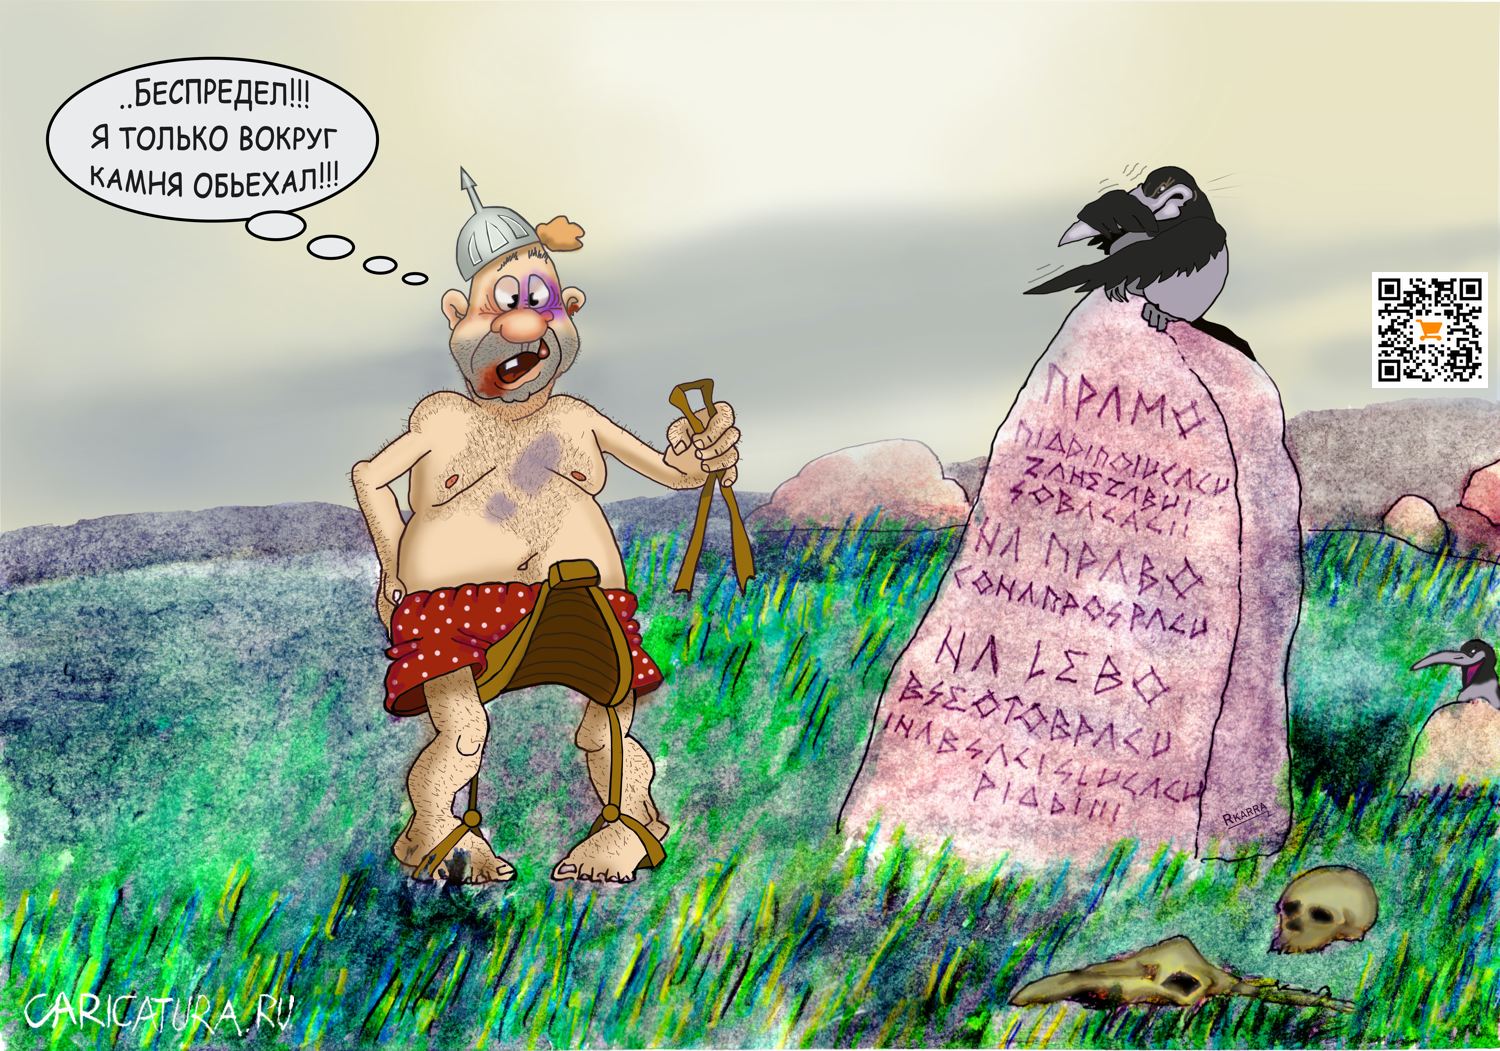 Карикатура "Витязь на распутье", Раф Карин